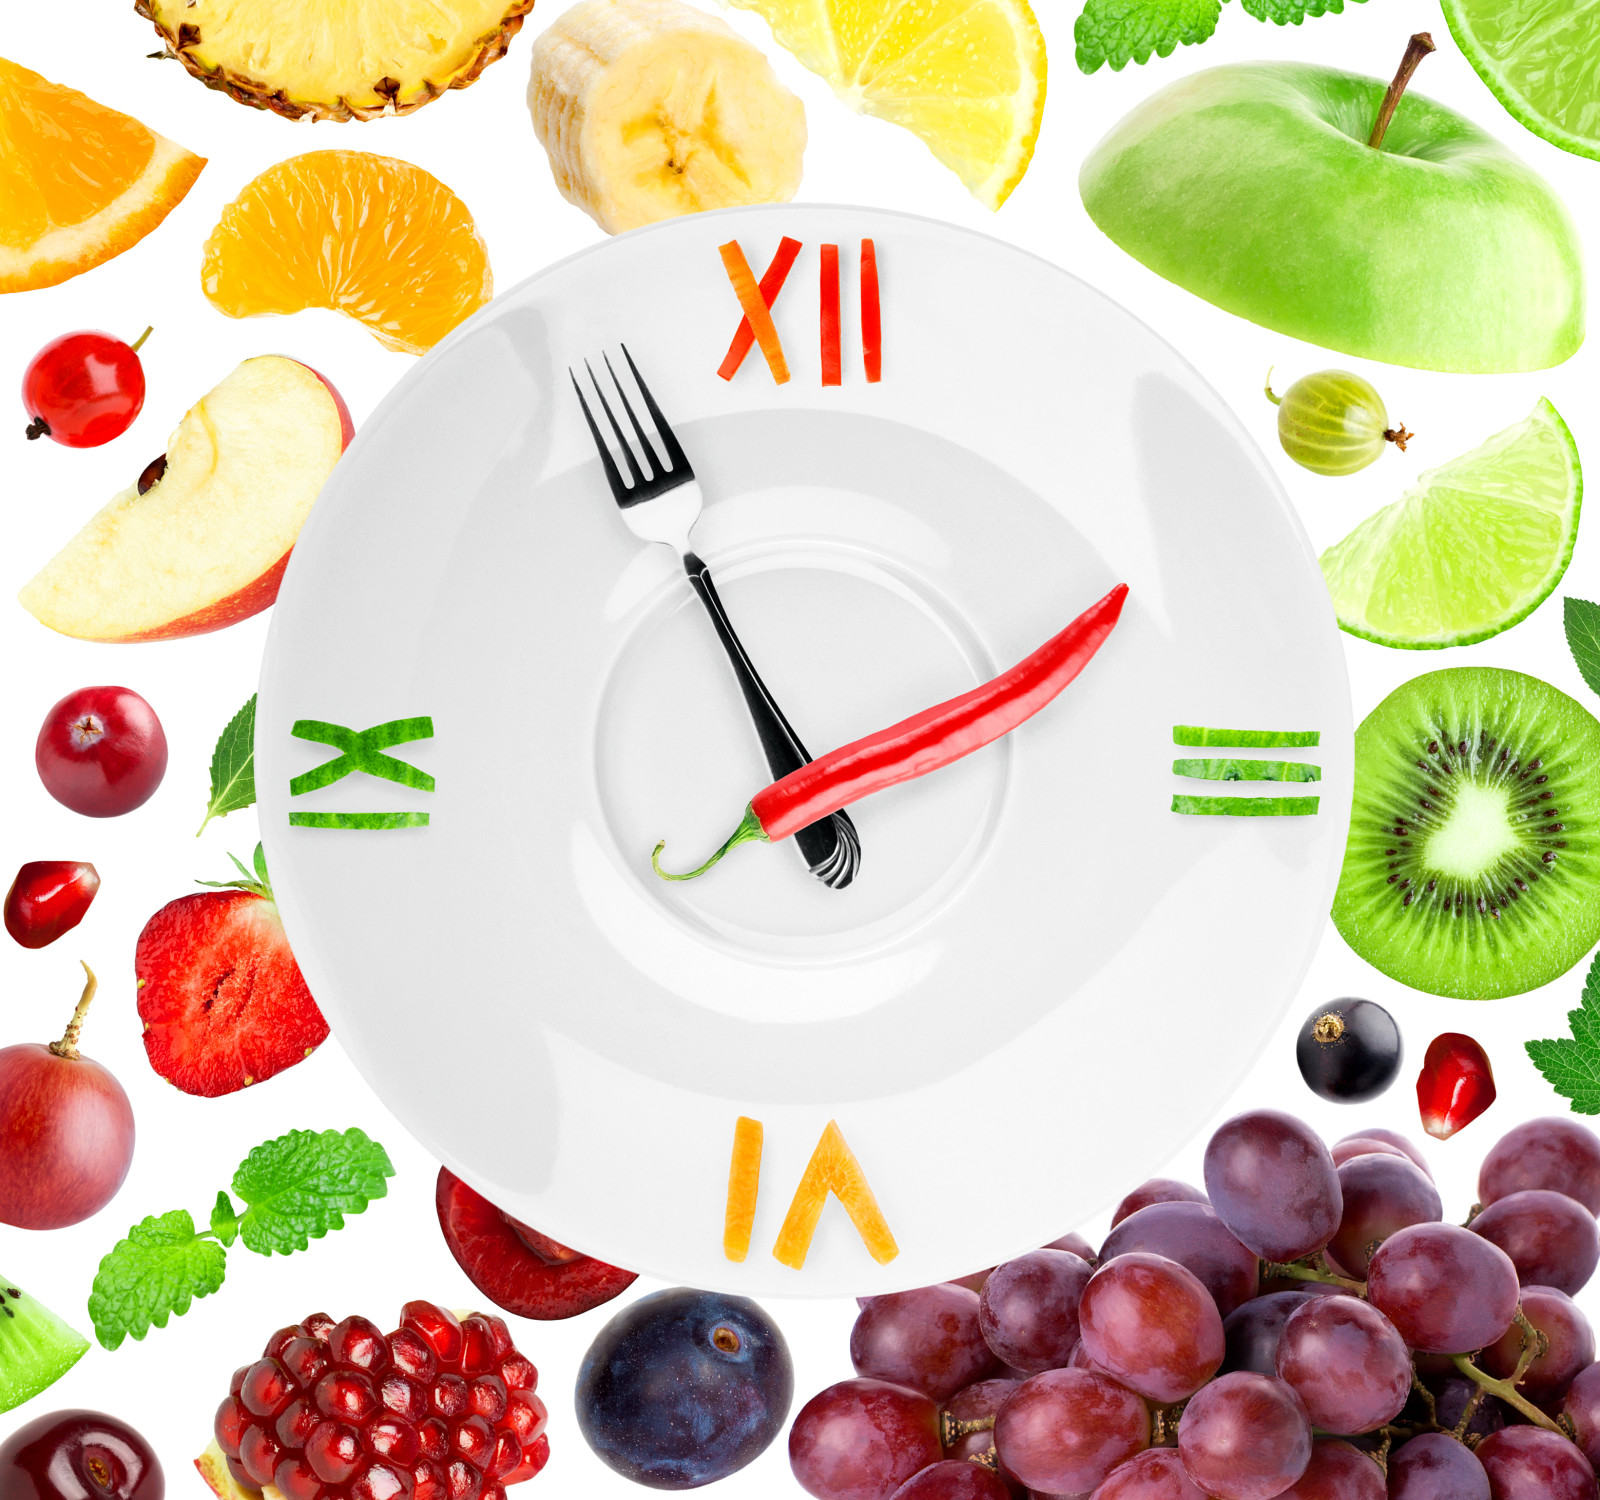 장과, 손목 시계, 플레이트, 딸기, 키위, 레몬, 화살, 흰 배경